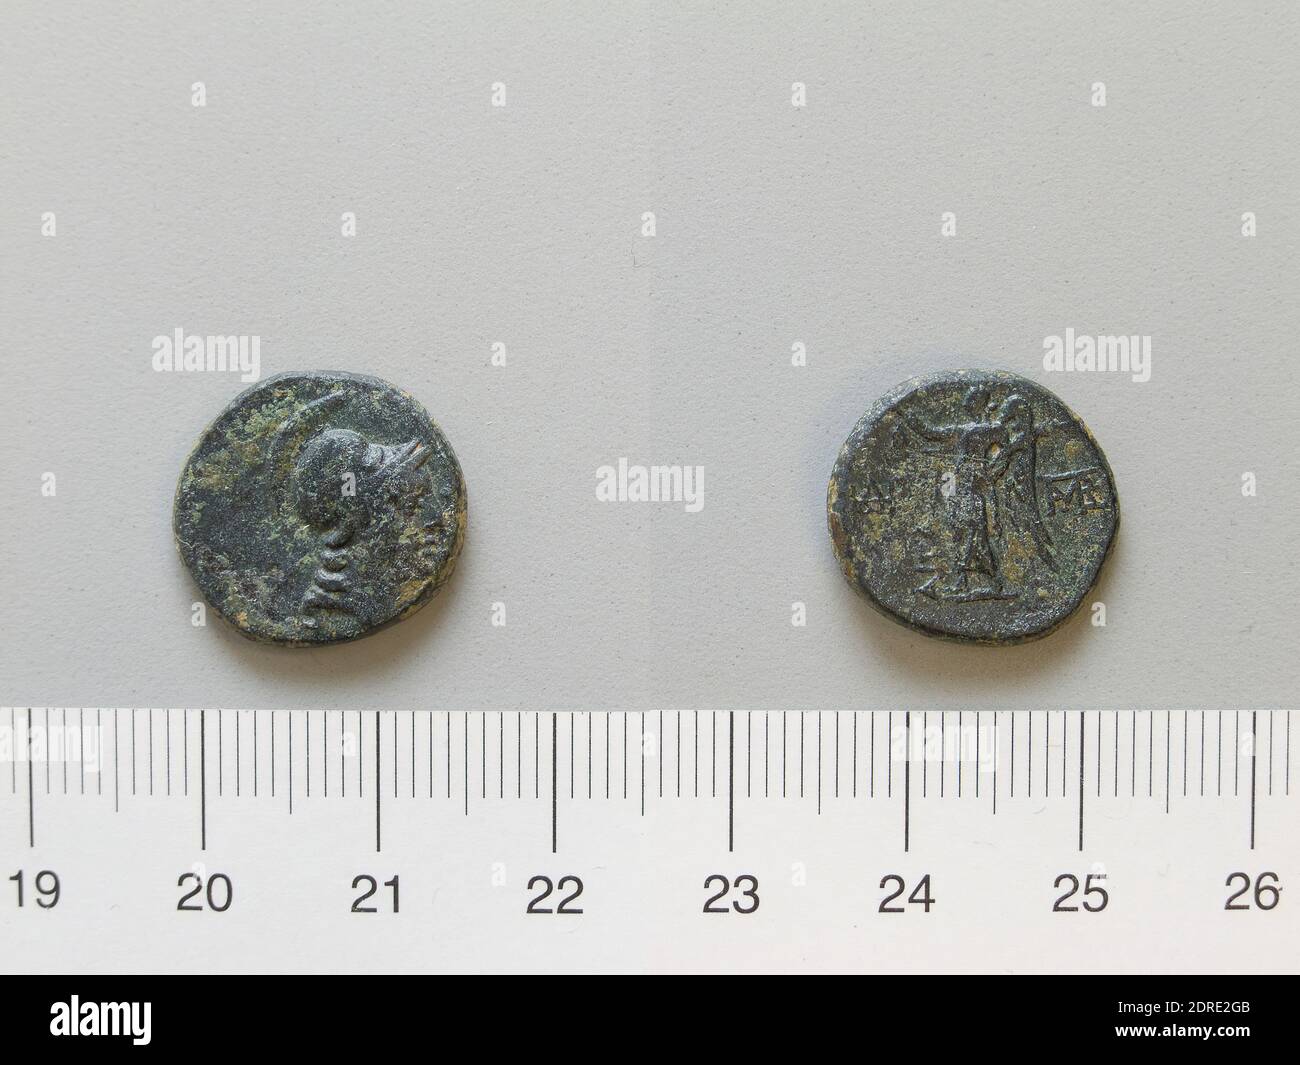 Mint: Aegae, Coin from Aegae, 2nd–1st century B.C., Copper, 3.89 g, 12:00, 17 mm, Made in Aegae, Macedonia, Greek, 2nd–1st century B.C., Numismatics, Numismatics Stock Photo